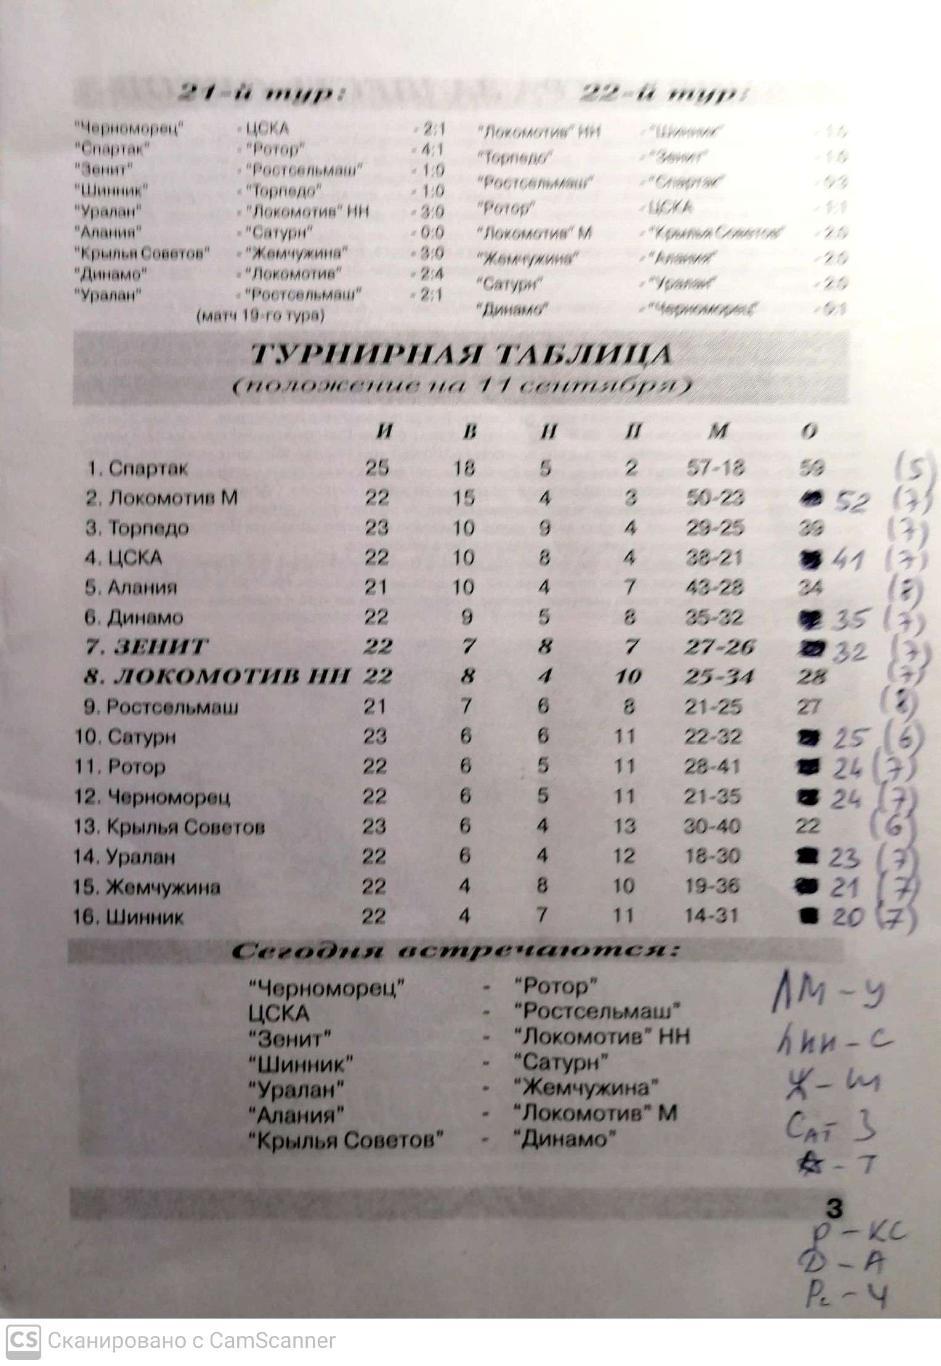 Чемпионат России-1999. 11.09.1999. Зенит – Локомотив Нижний Новгород 1